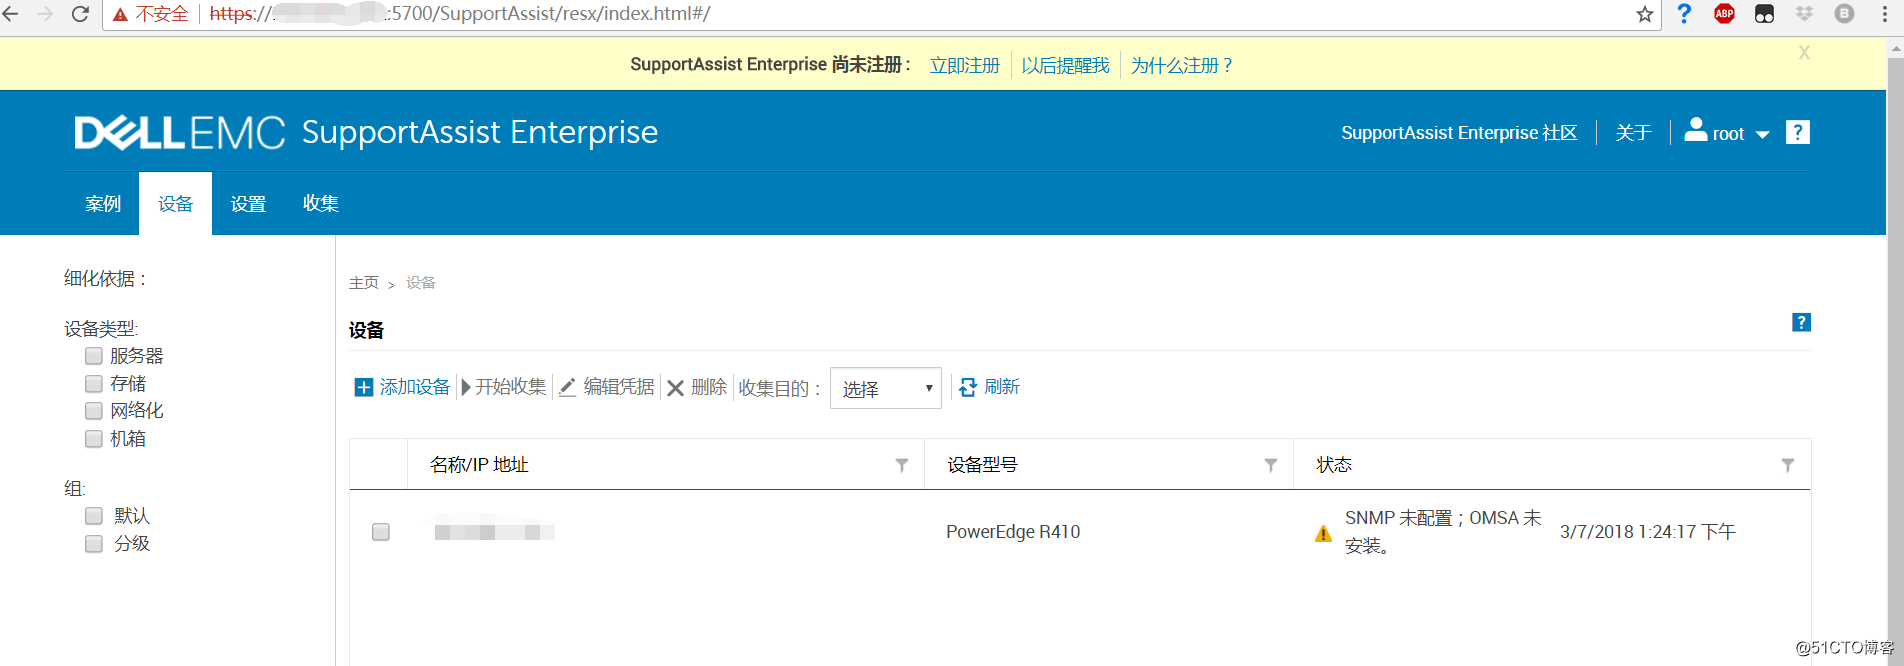 使用Dell EMC SupportAssist Enterprise 來檢查DELL服務器硬件故障